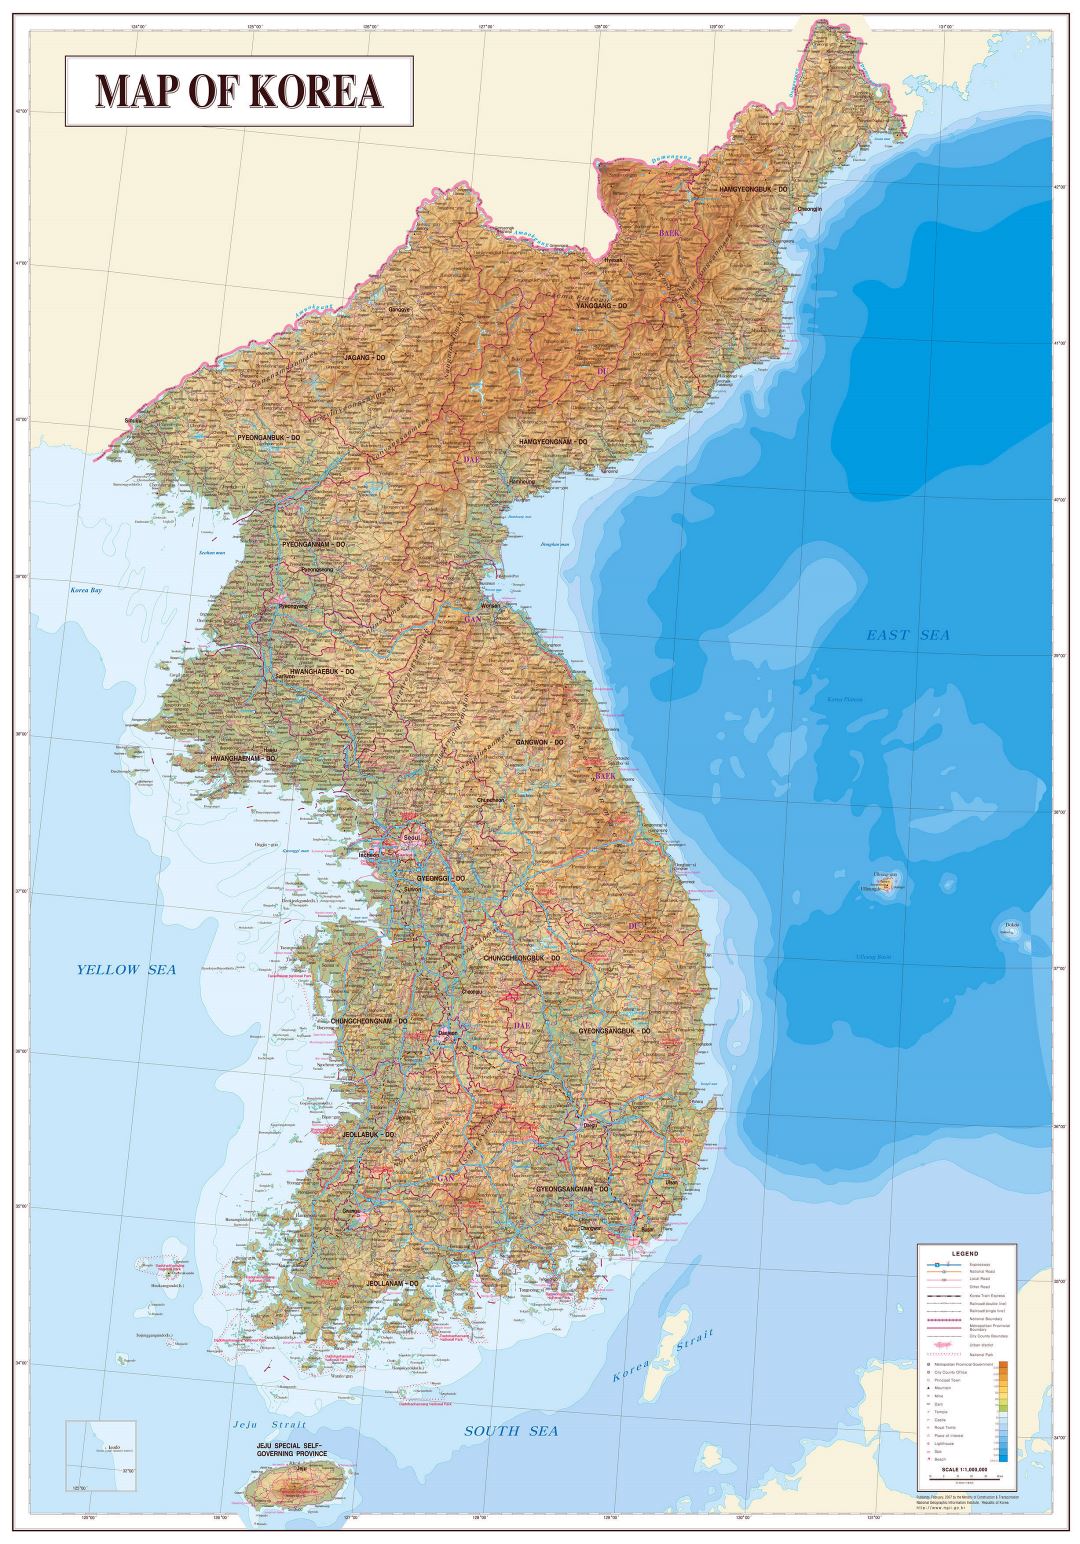 Grande detallado mapa de topografía y geología de la Península de Corea